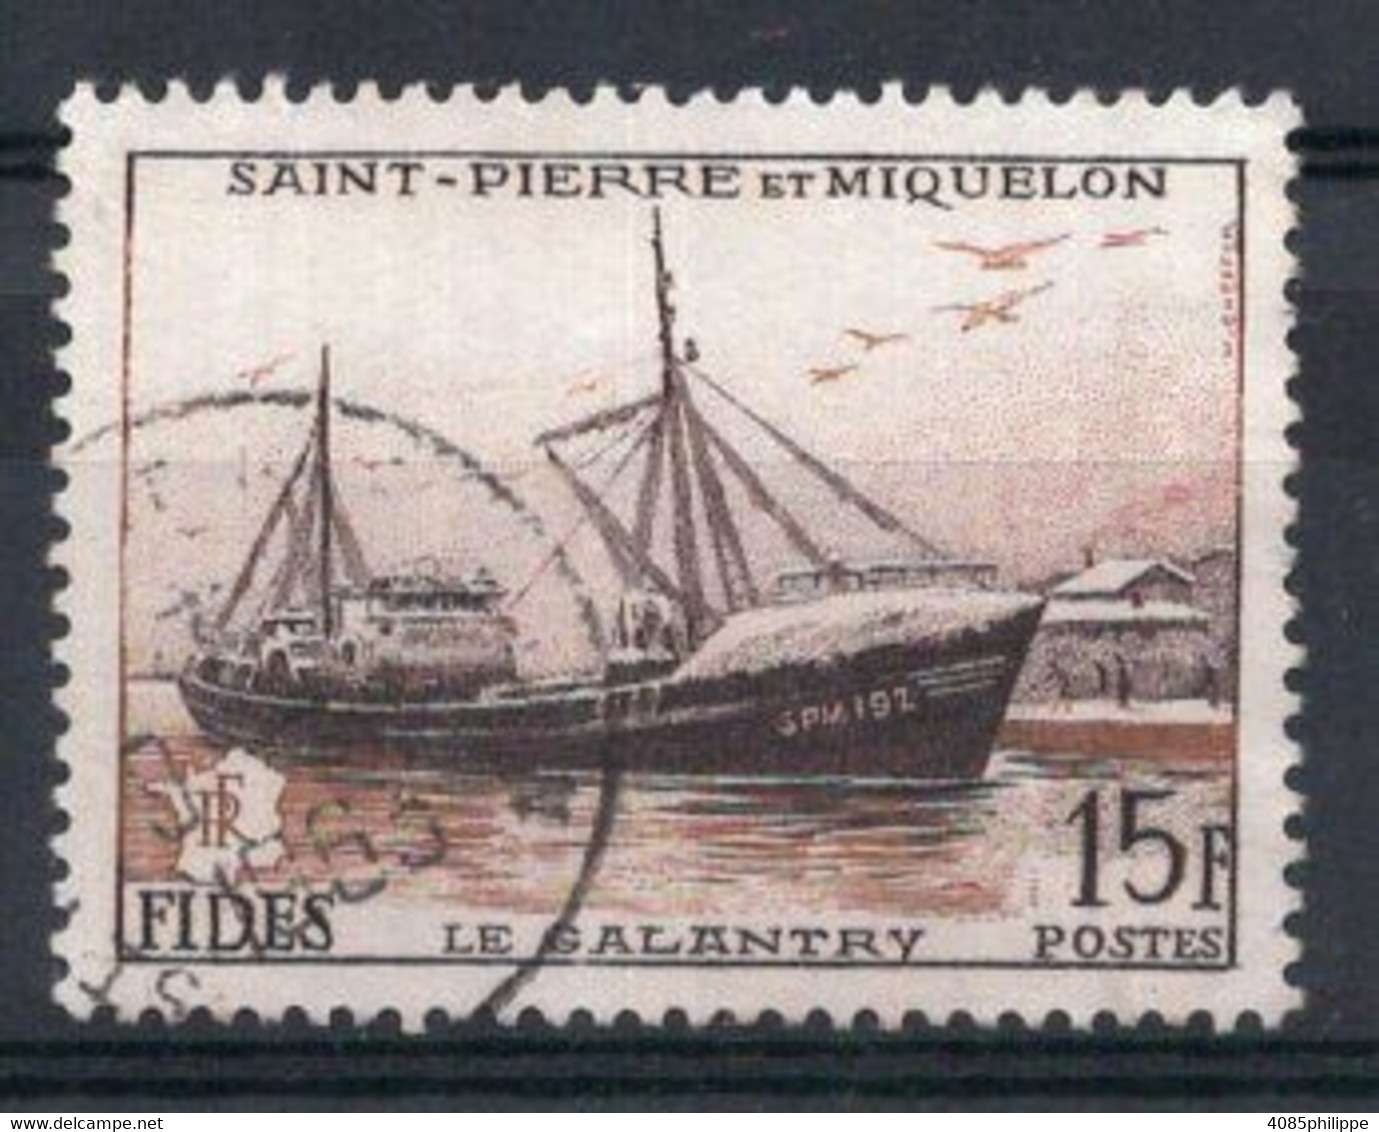 Saint PIERRE & MIQUELON Timbre Poste N°352 Oblitéré TB Cote 4.50€ - Used Stamps